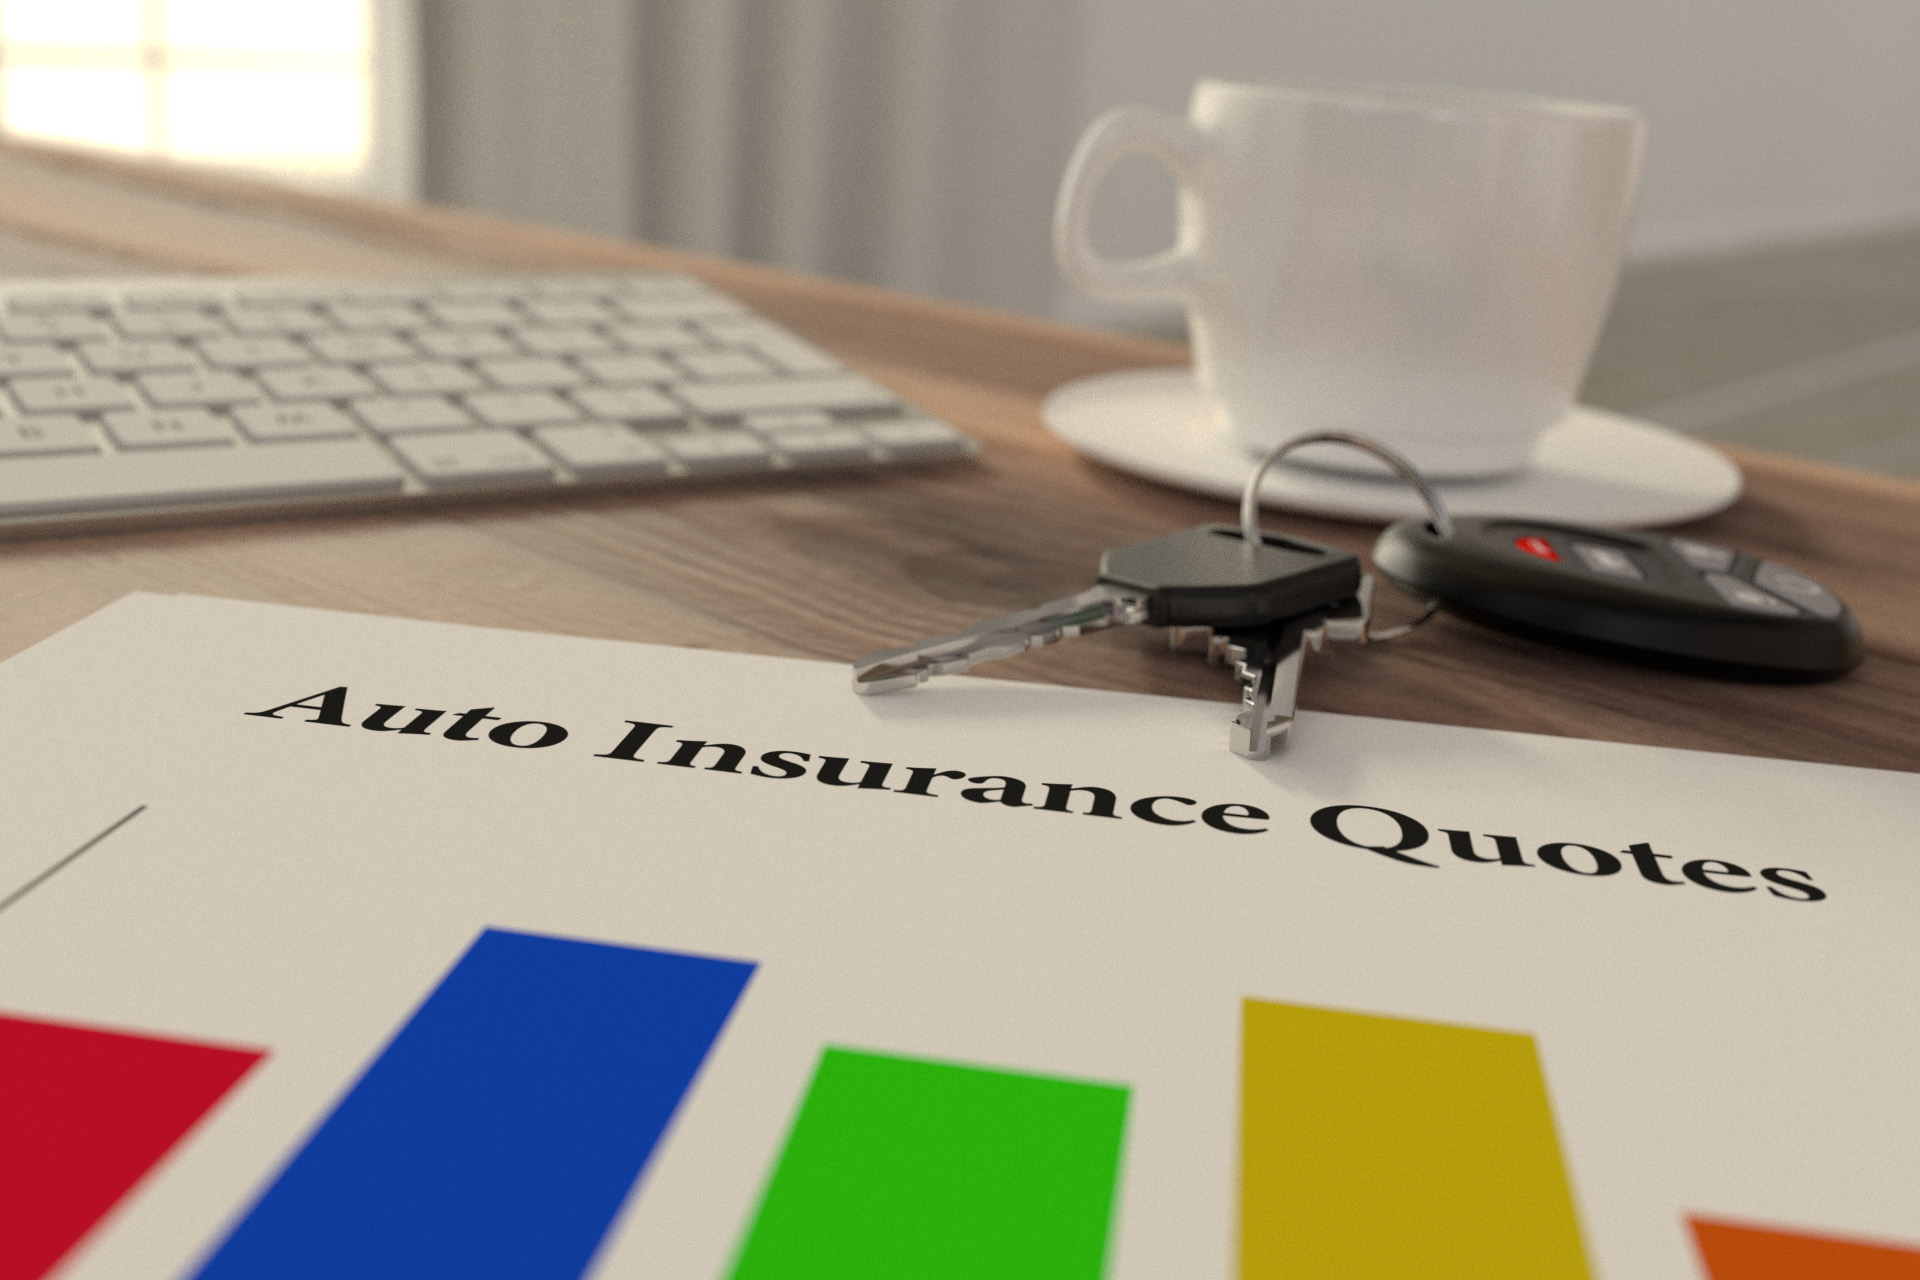 Auto insurance quote comparison free image download